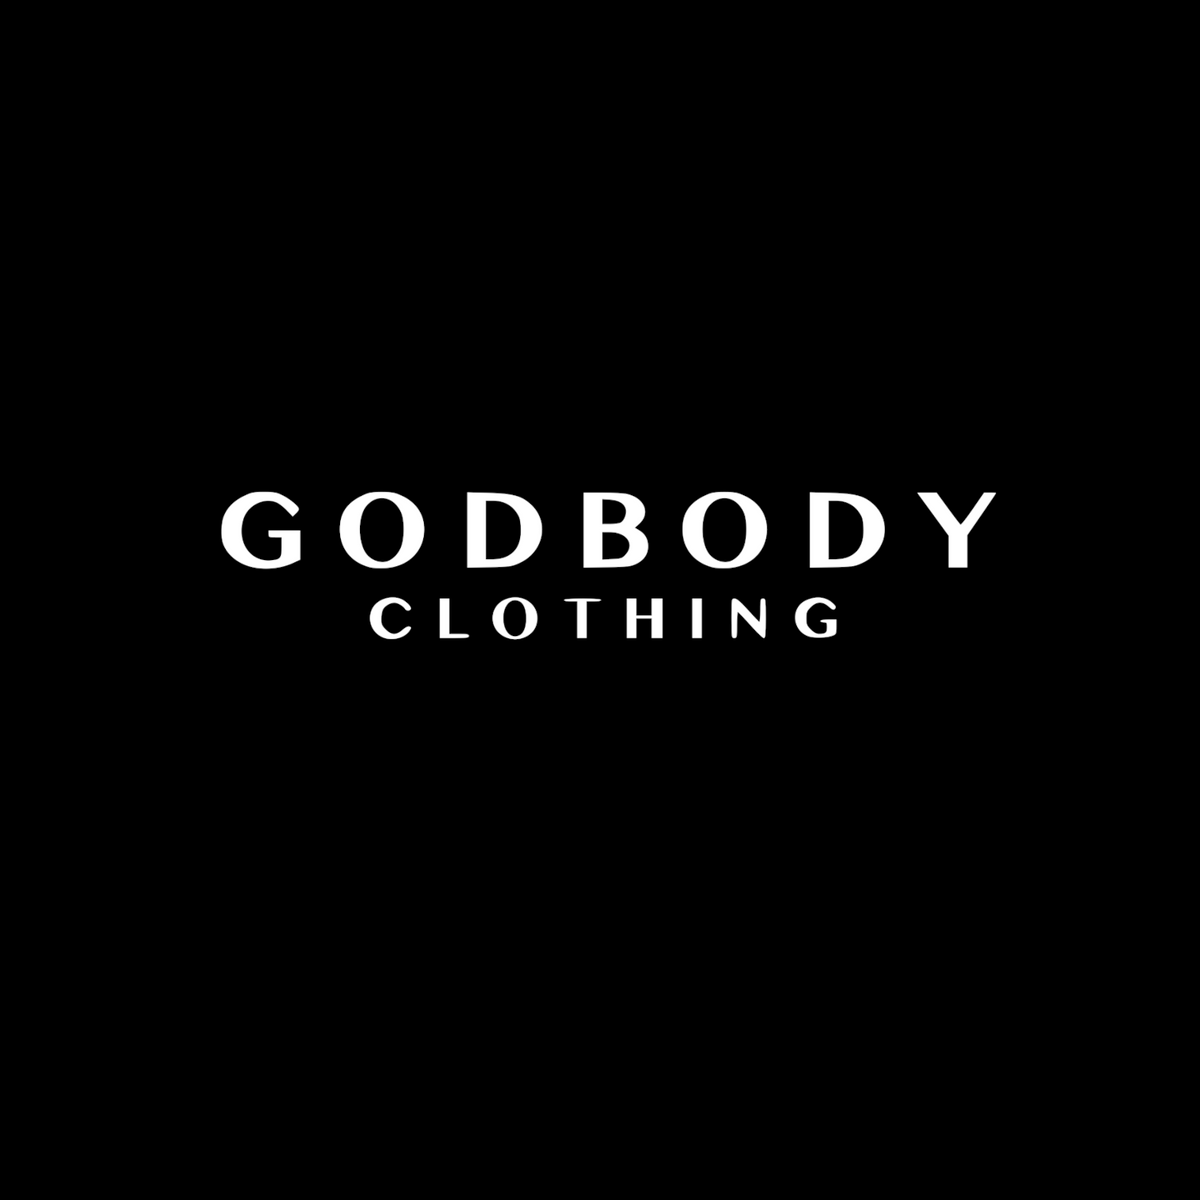 GODBODY CLOTHING